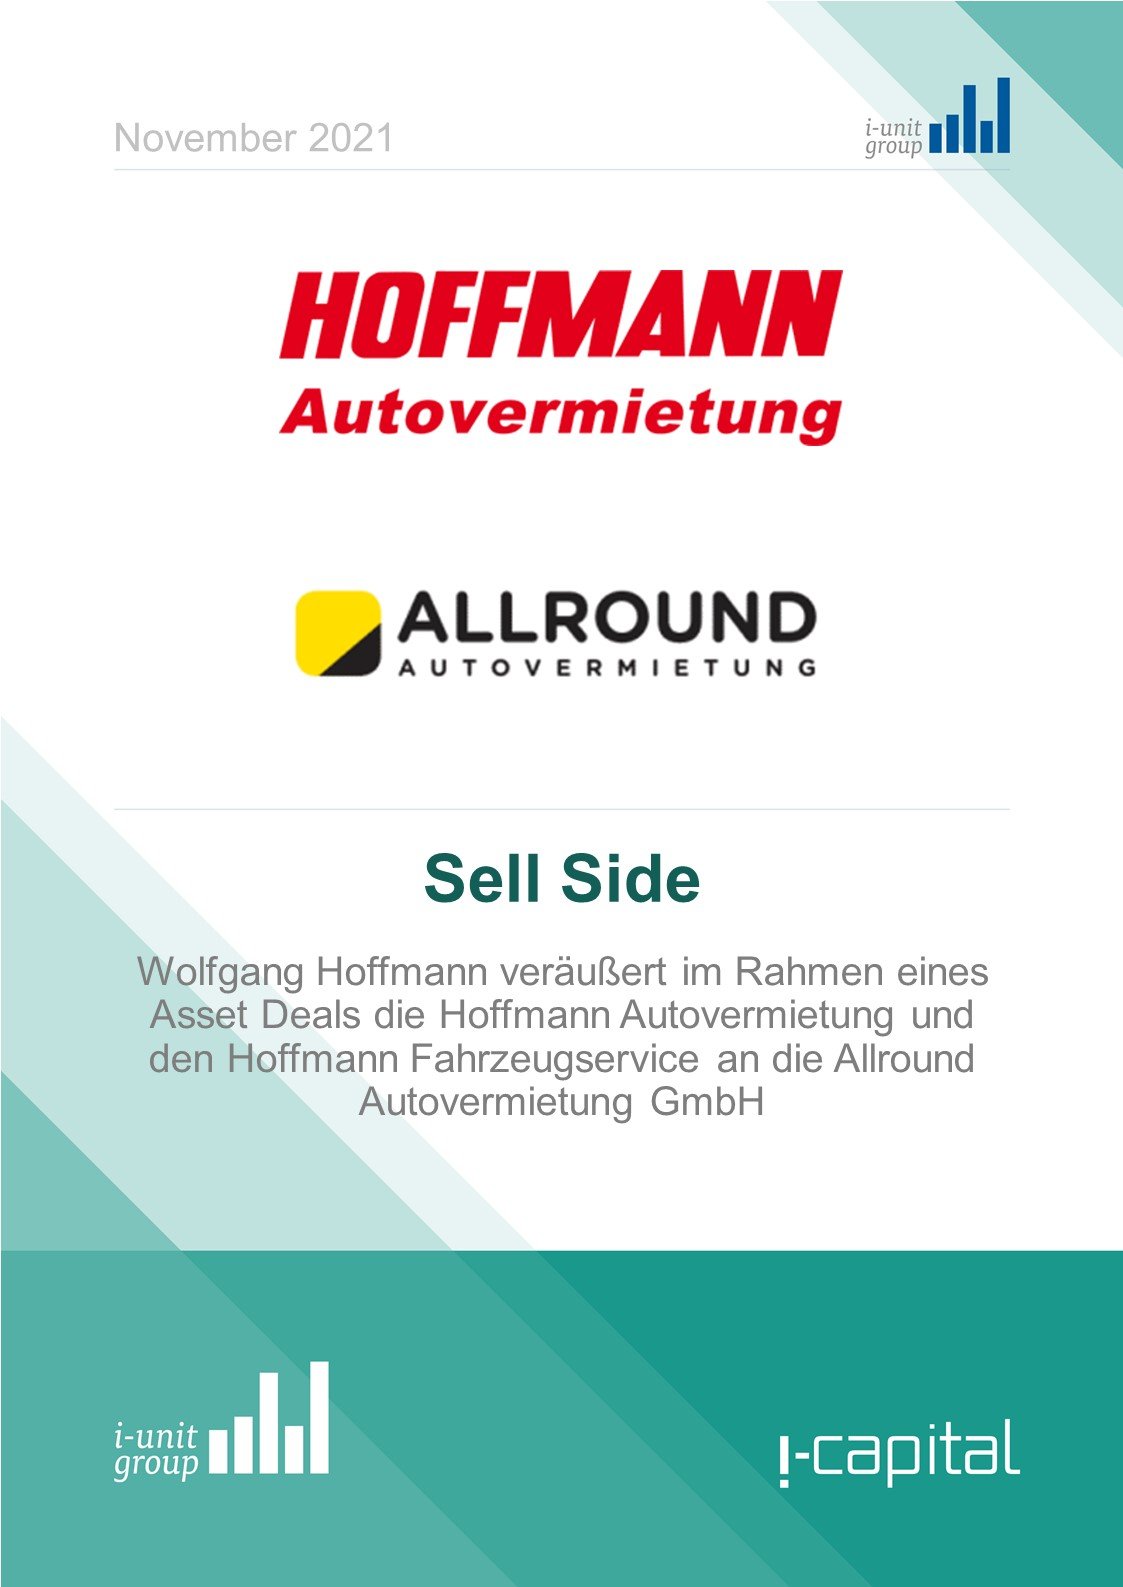 i-capital Deal Hoffmann